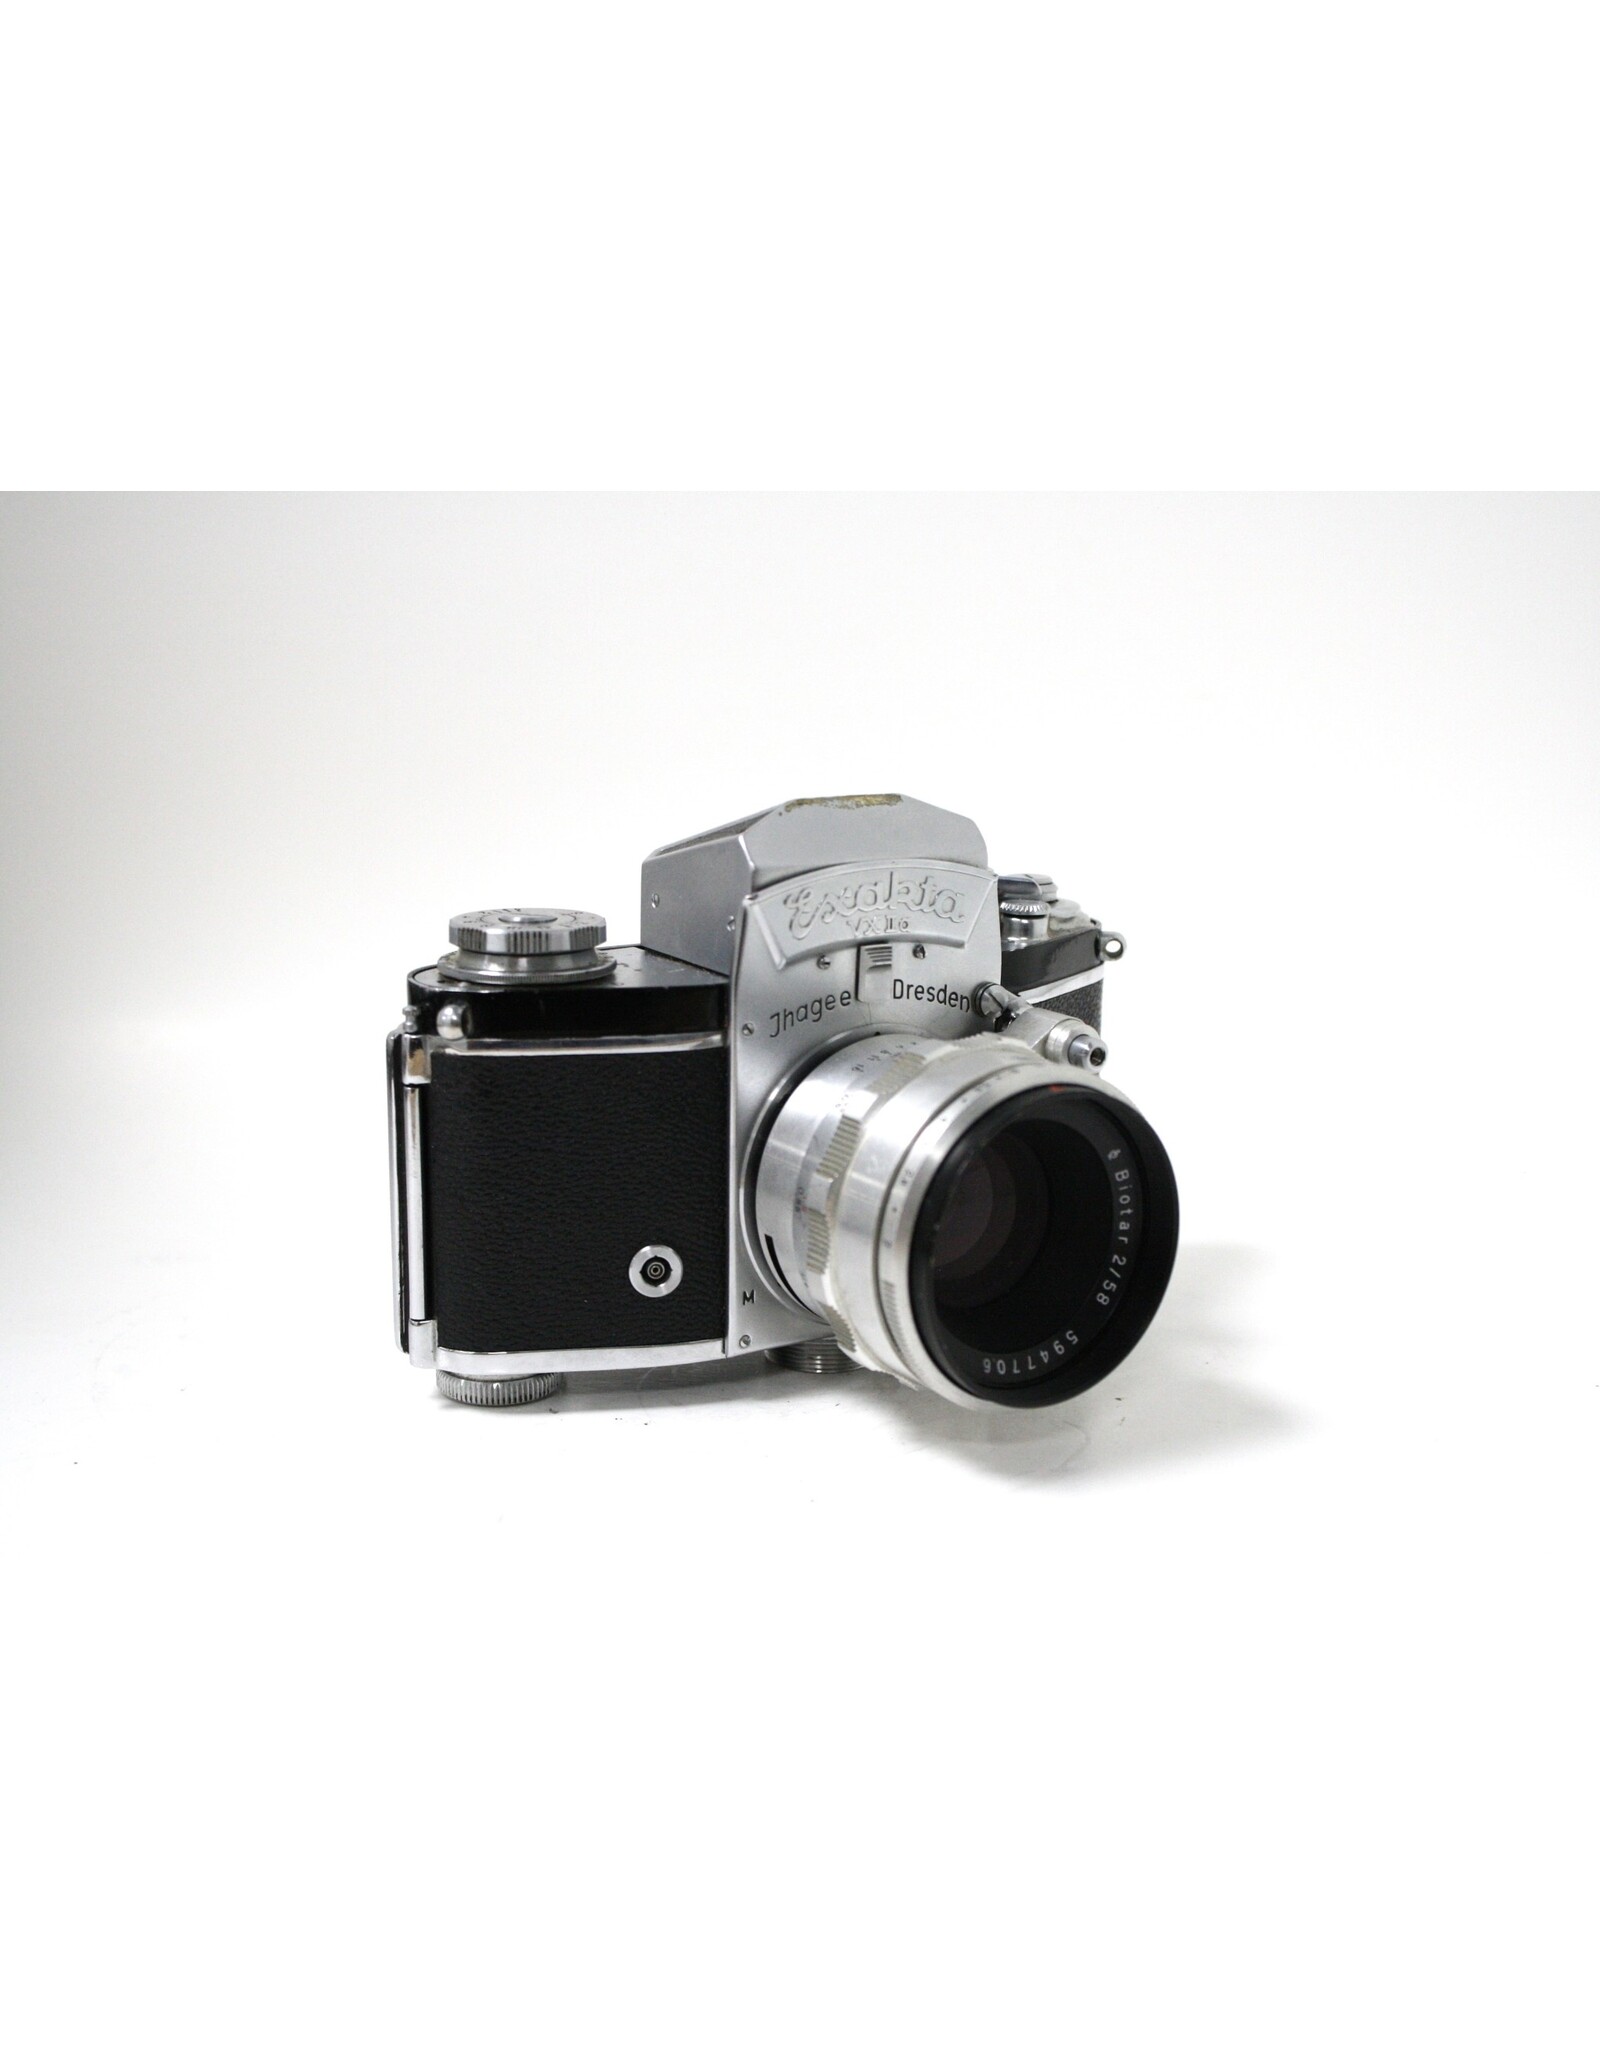 Exakta Exakta VX IIa 35mm film camera with Carl Zeiss Biotar 58mm f2 Lens  (MINT!)